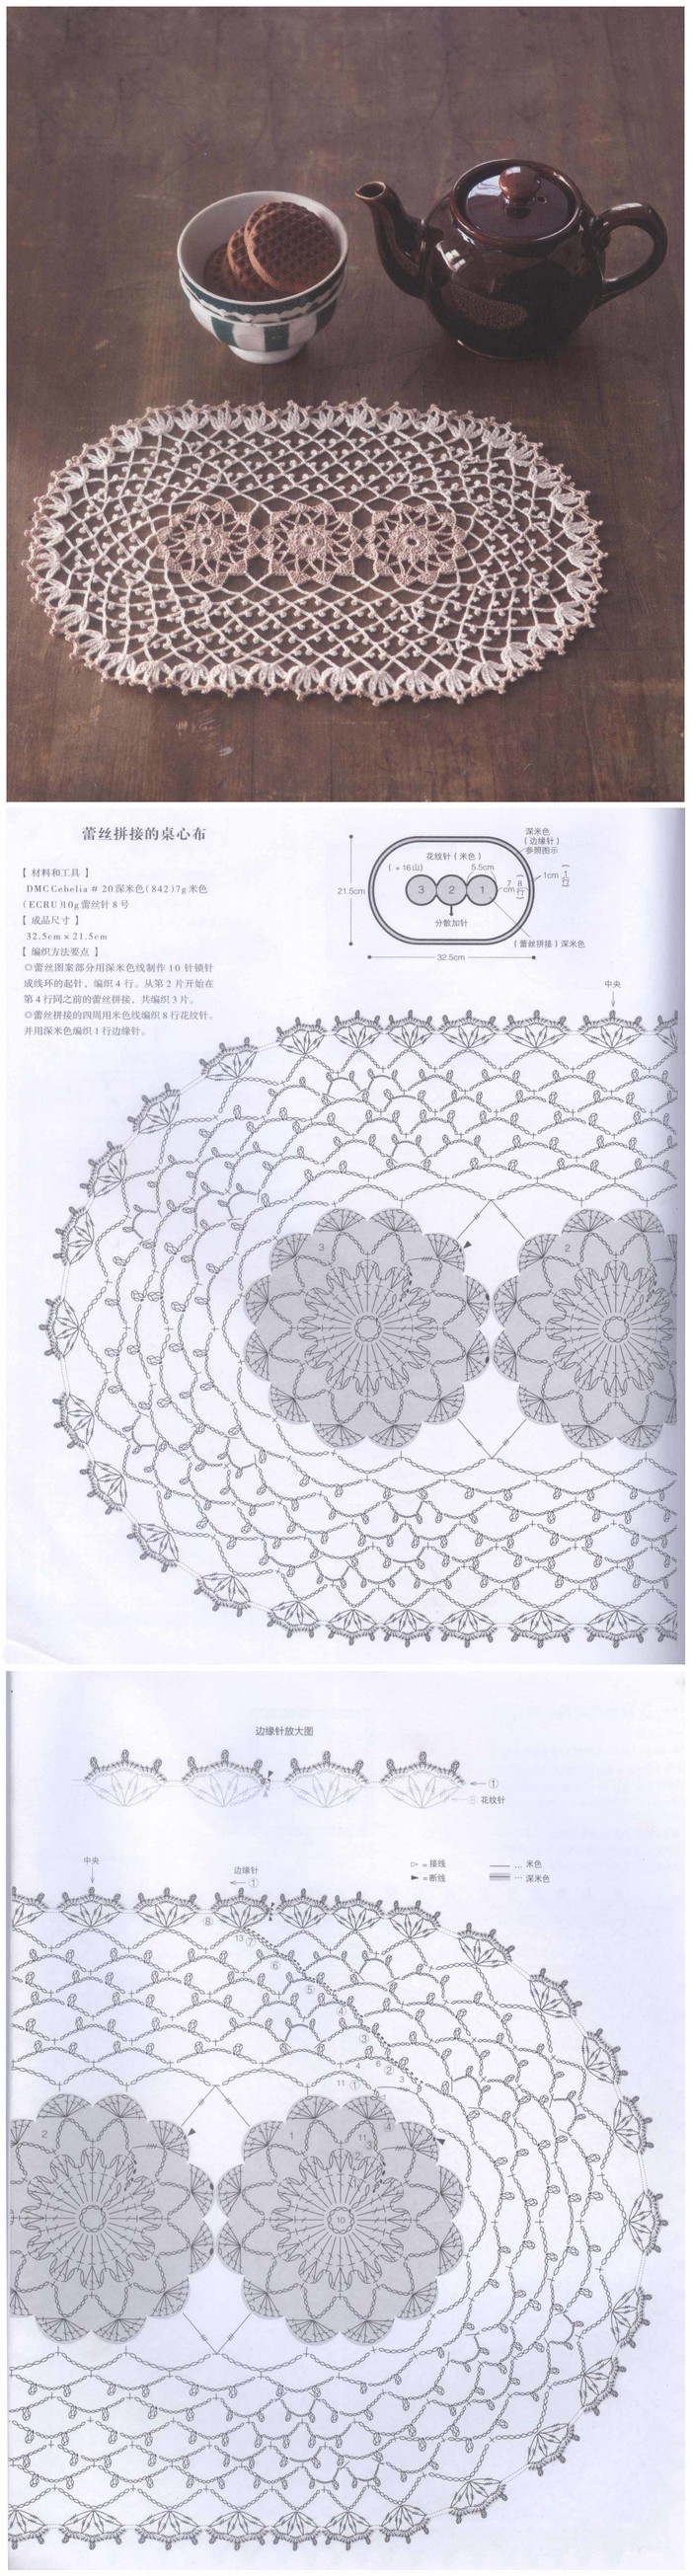 oval lace doily pattern